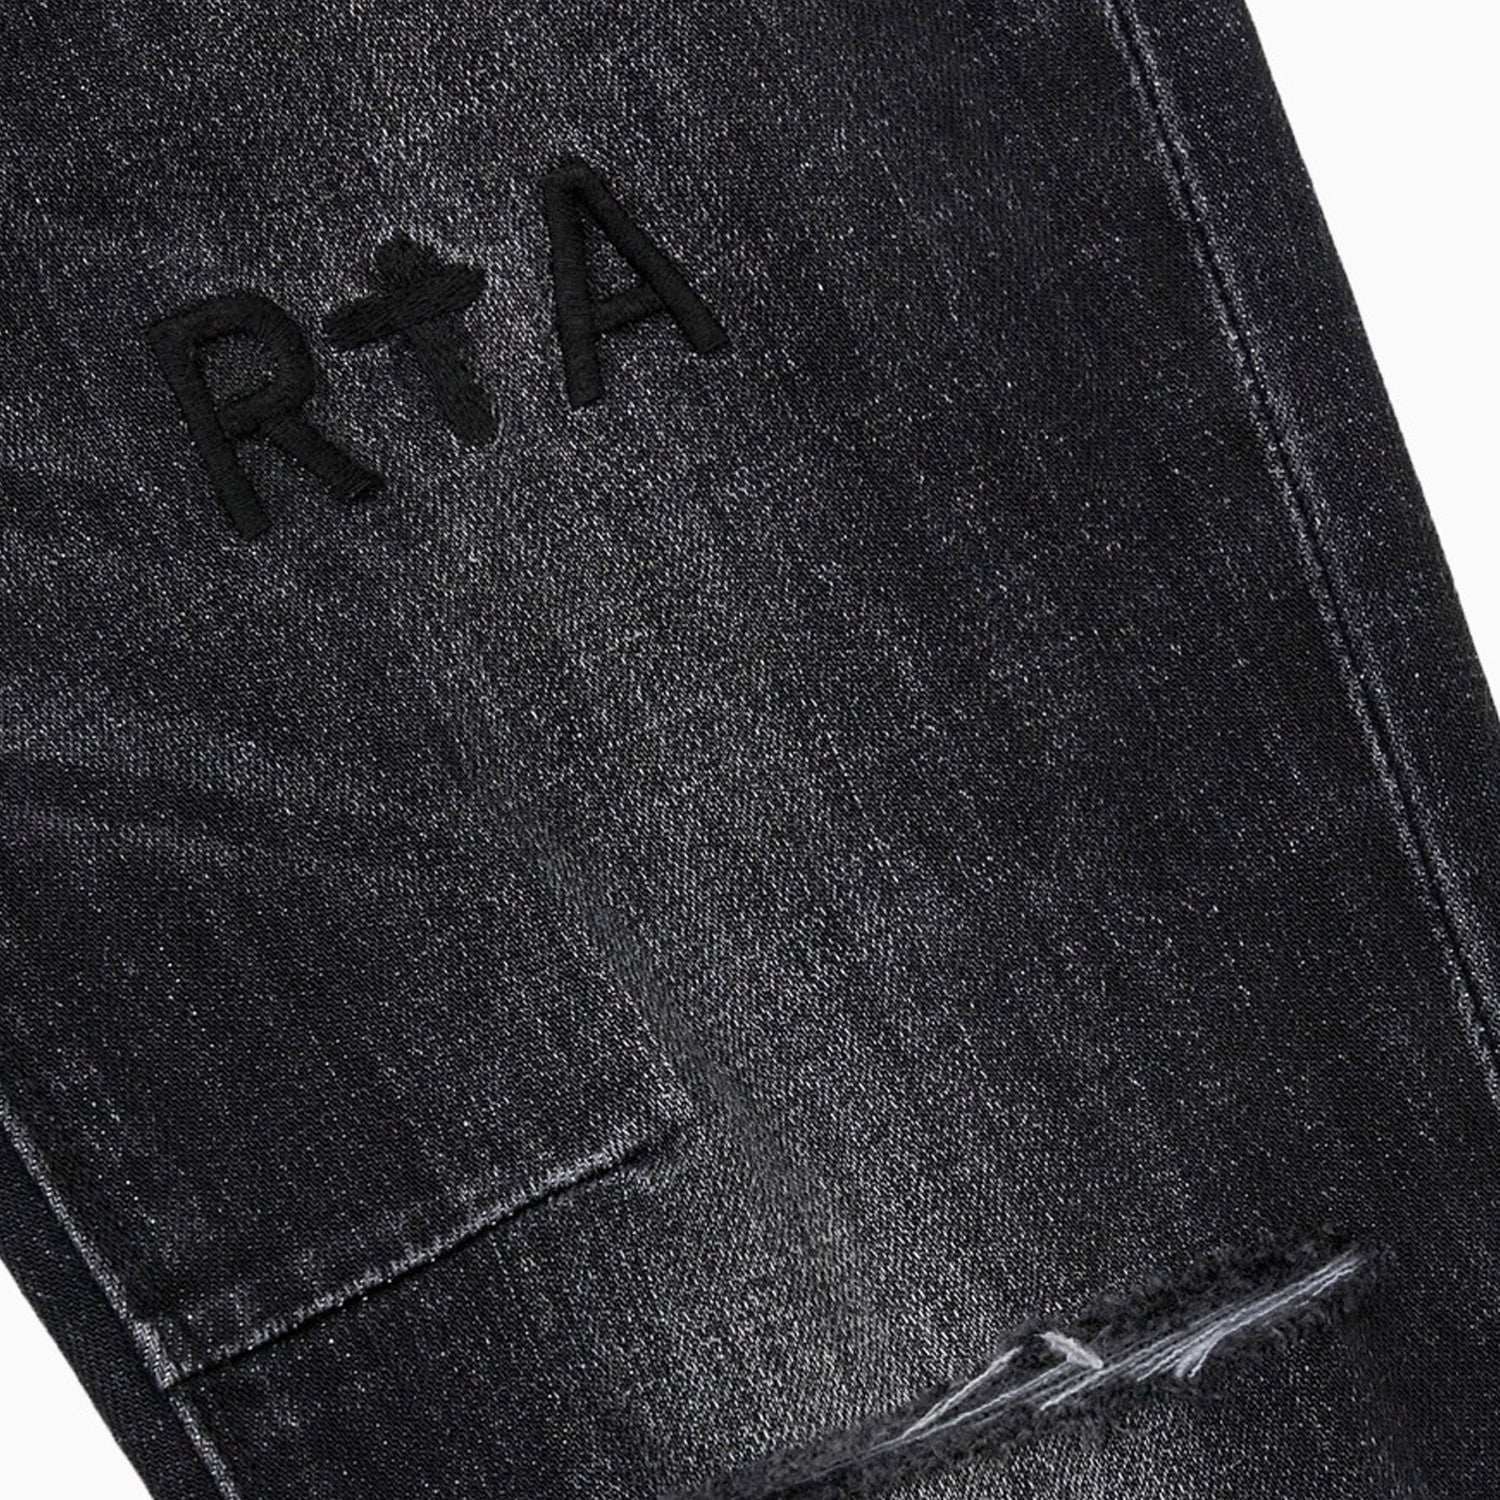 rta-mens-bryant-skinny-denim-jeans-pant-mh24d623-b1205disgr